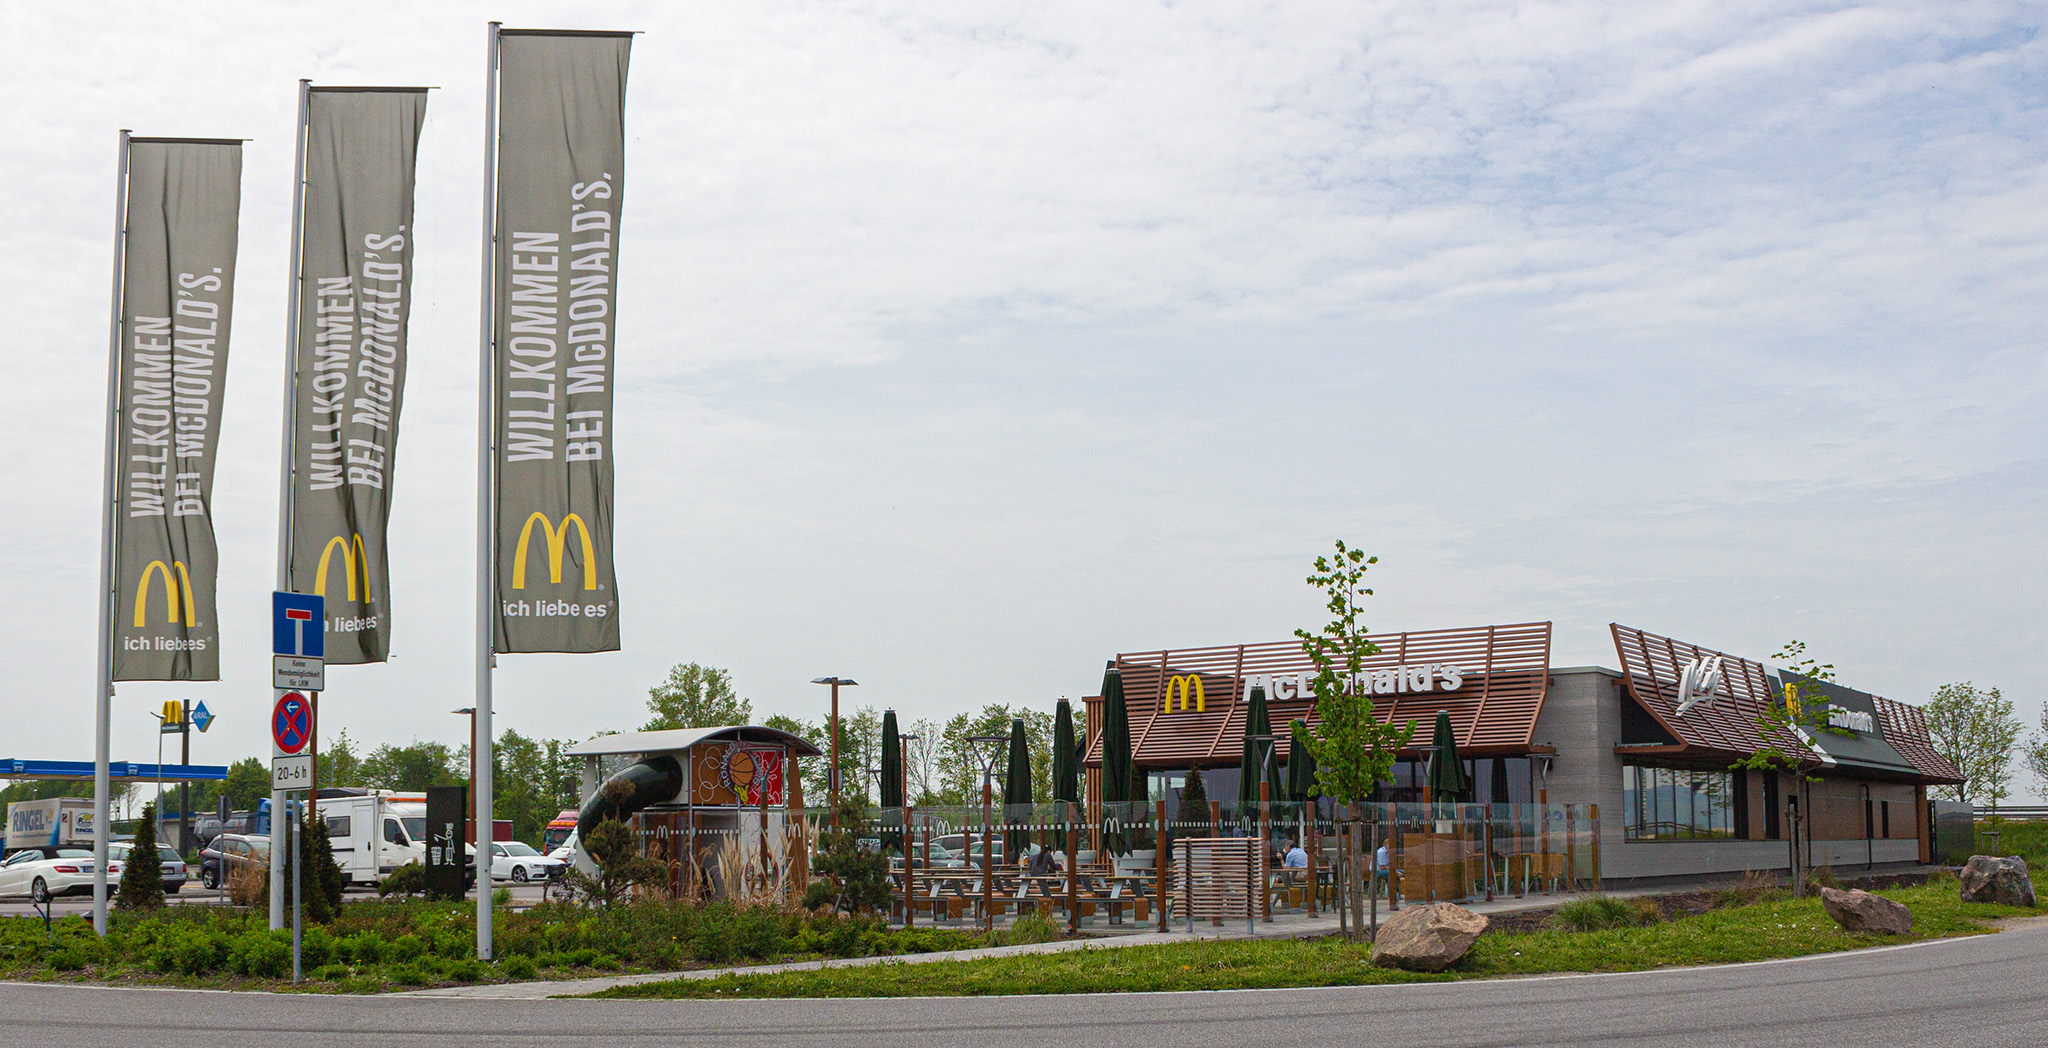 Das McDonald’s-Restaurant in Wörth an der Donau